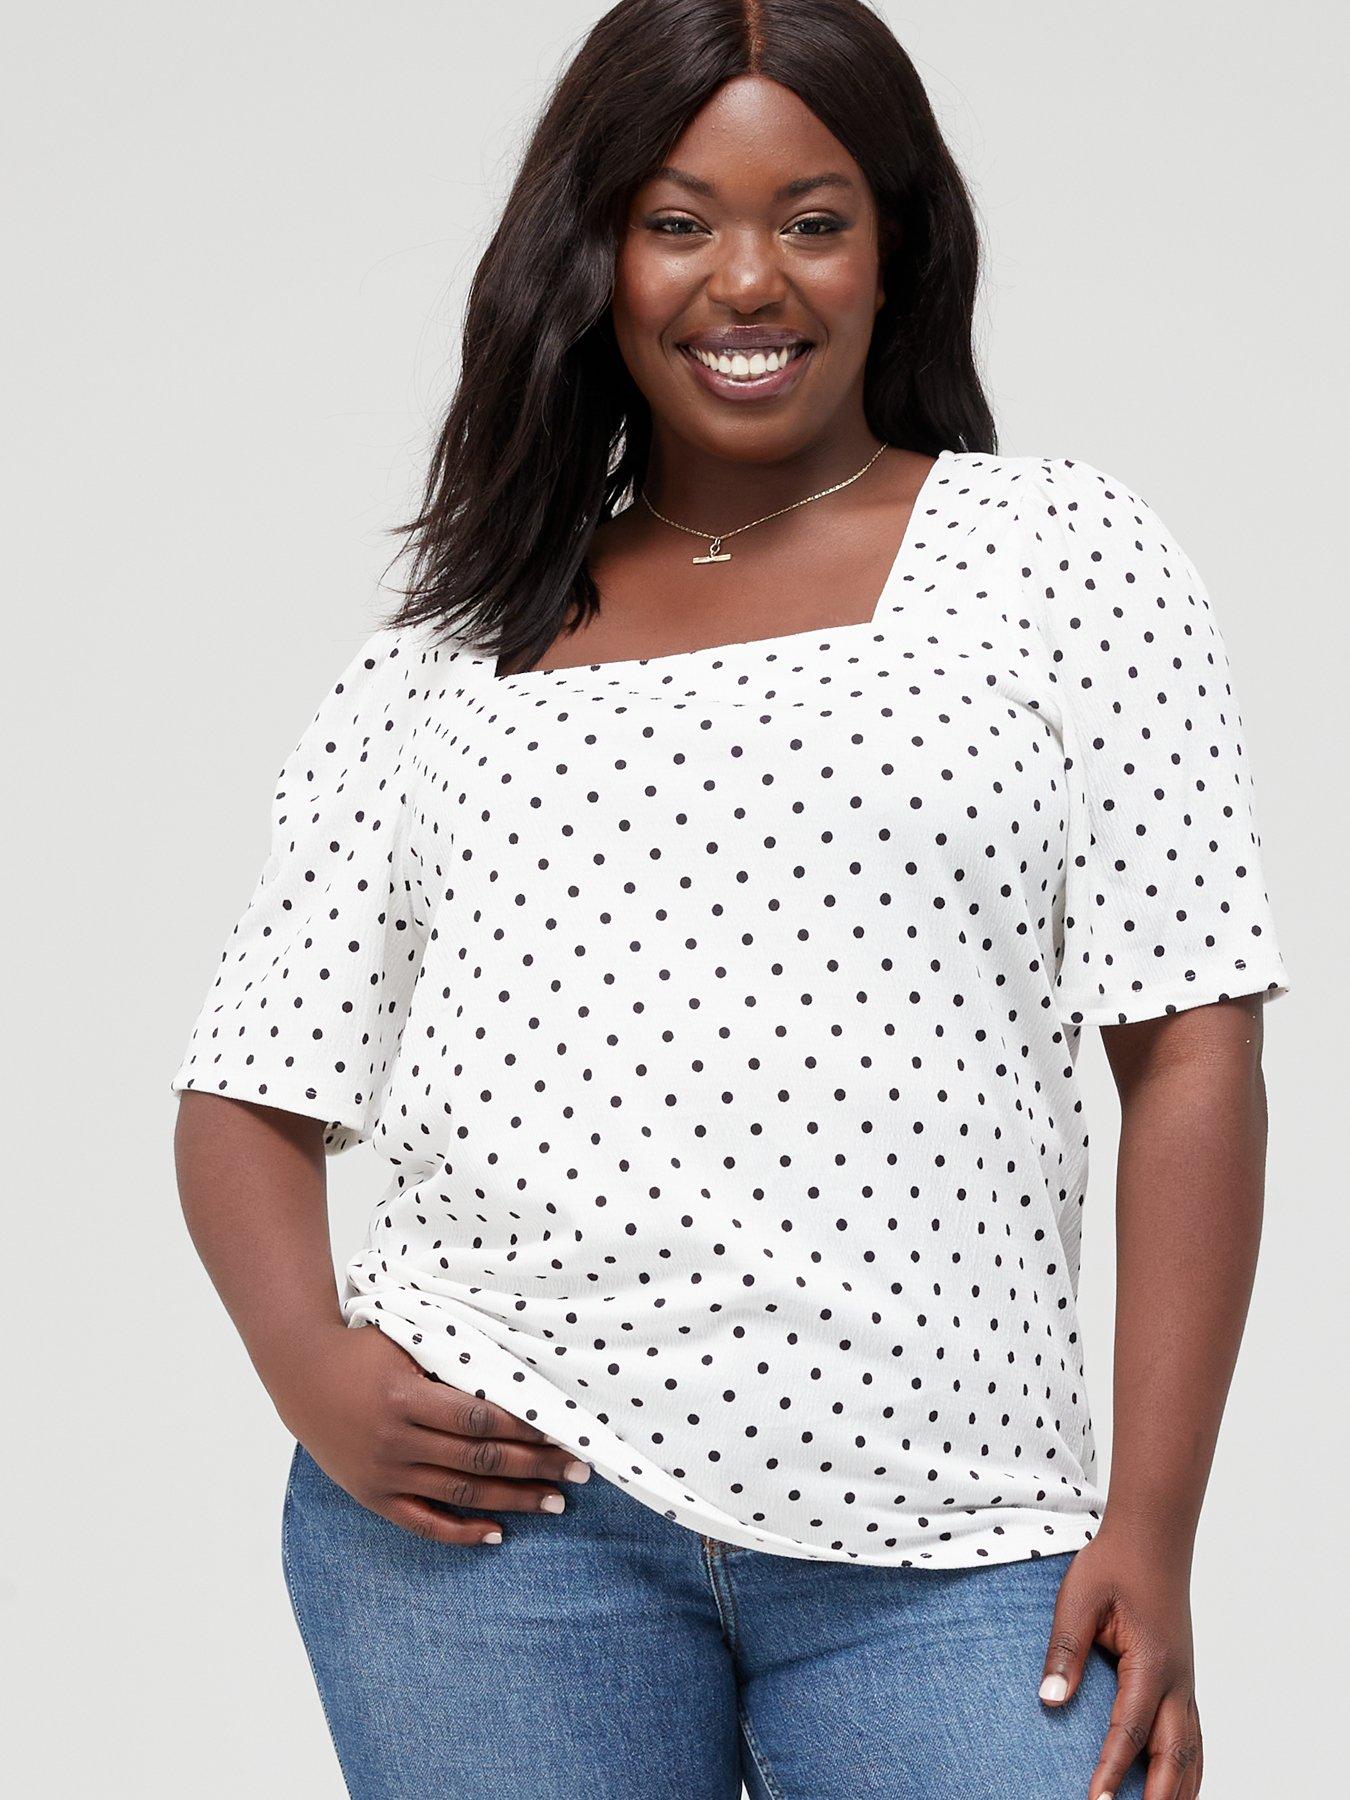 discount 53% White L WOMEN FASHION Shirts & T-shirts Blouse Crochet Bohemy blouse 